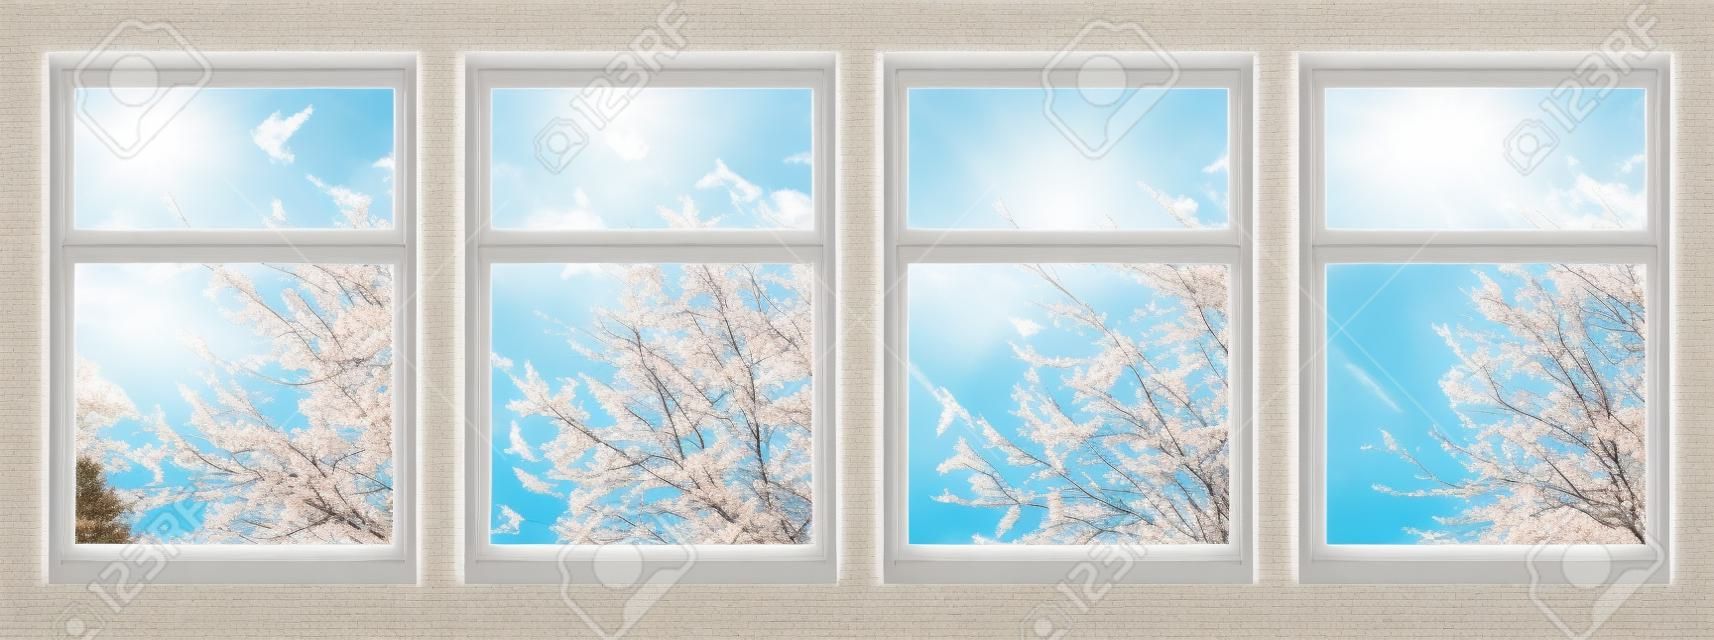 Four Season di Windows: Primavera, Estate, Autunno e Inverno